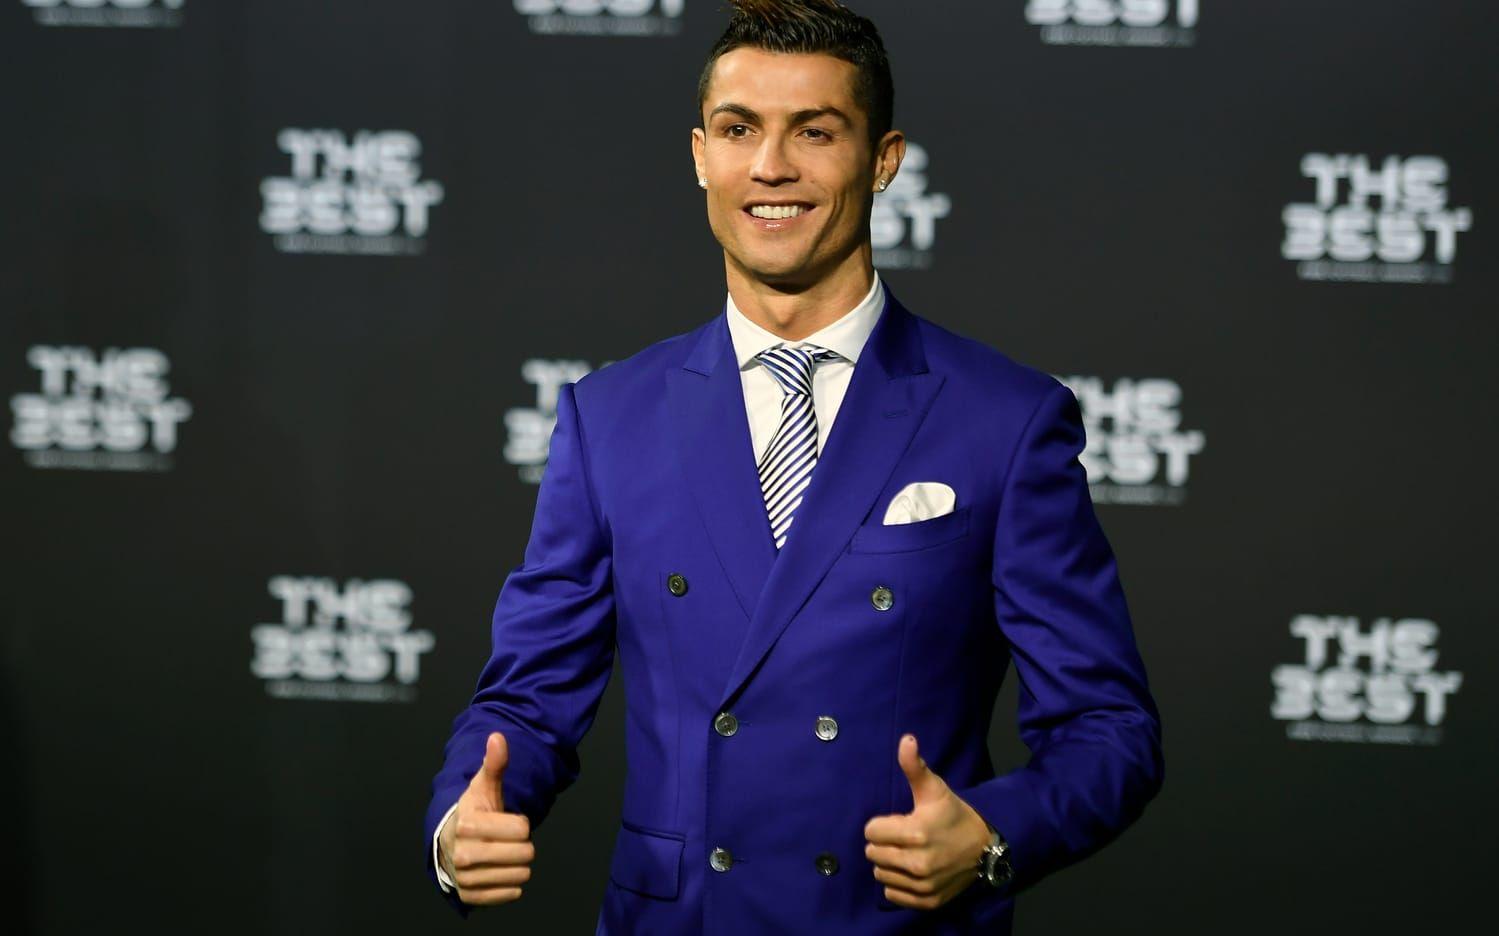 2016. Vinnare: Cristiano Ronaldo, Portugal och Real Madrid. Tog hem priset för fransmannen Antoine Griezmann och Lionel Messi. Foto: TT